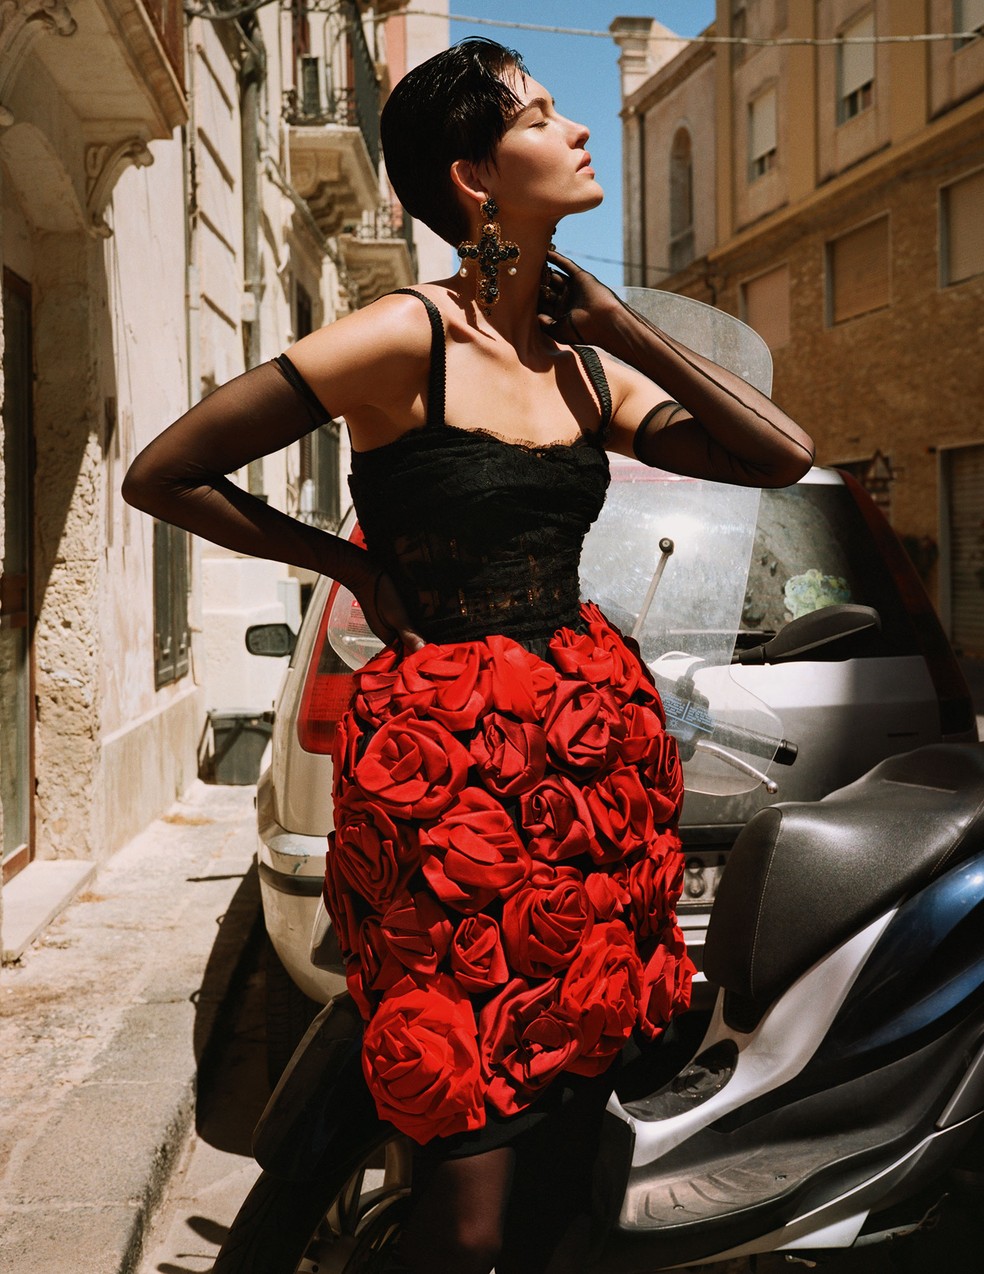 Corset de tule e renda, saia bordada, meia-calça e luvas. Todos os looks são da Alta Moda da Dolce & Gabbana — Foto: Angelo Pennetta